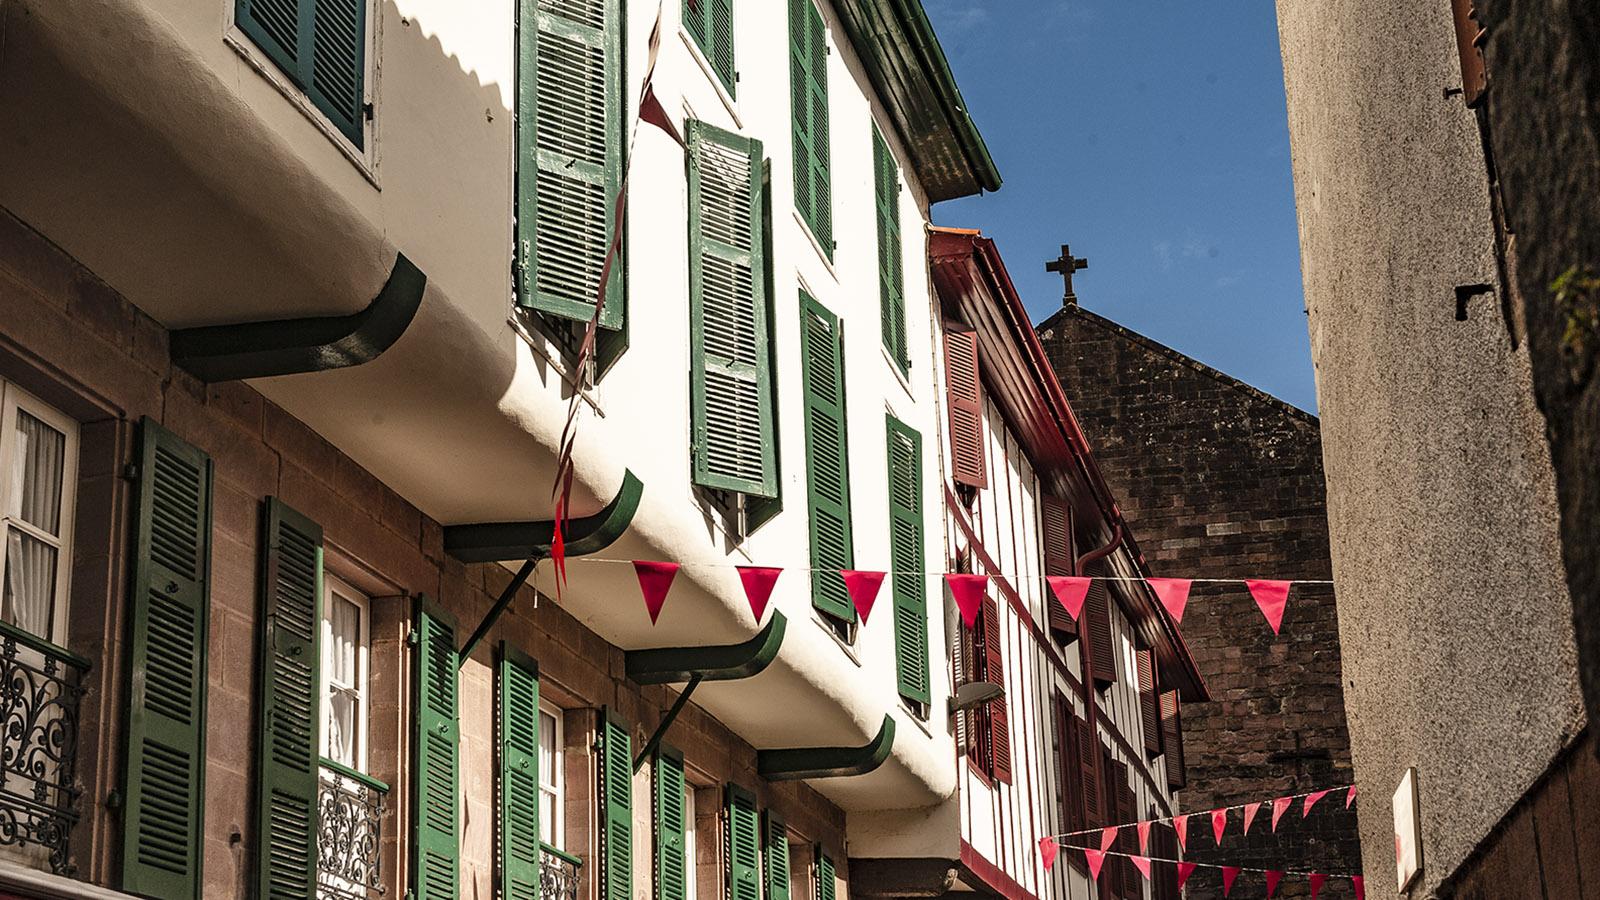 Rot-Weiß-Grün: die Farben der Basken in den Gassen von Saint-Jean-Pied-de-Port. Foto: Hilke Maunder